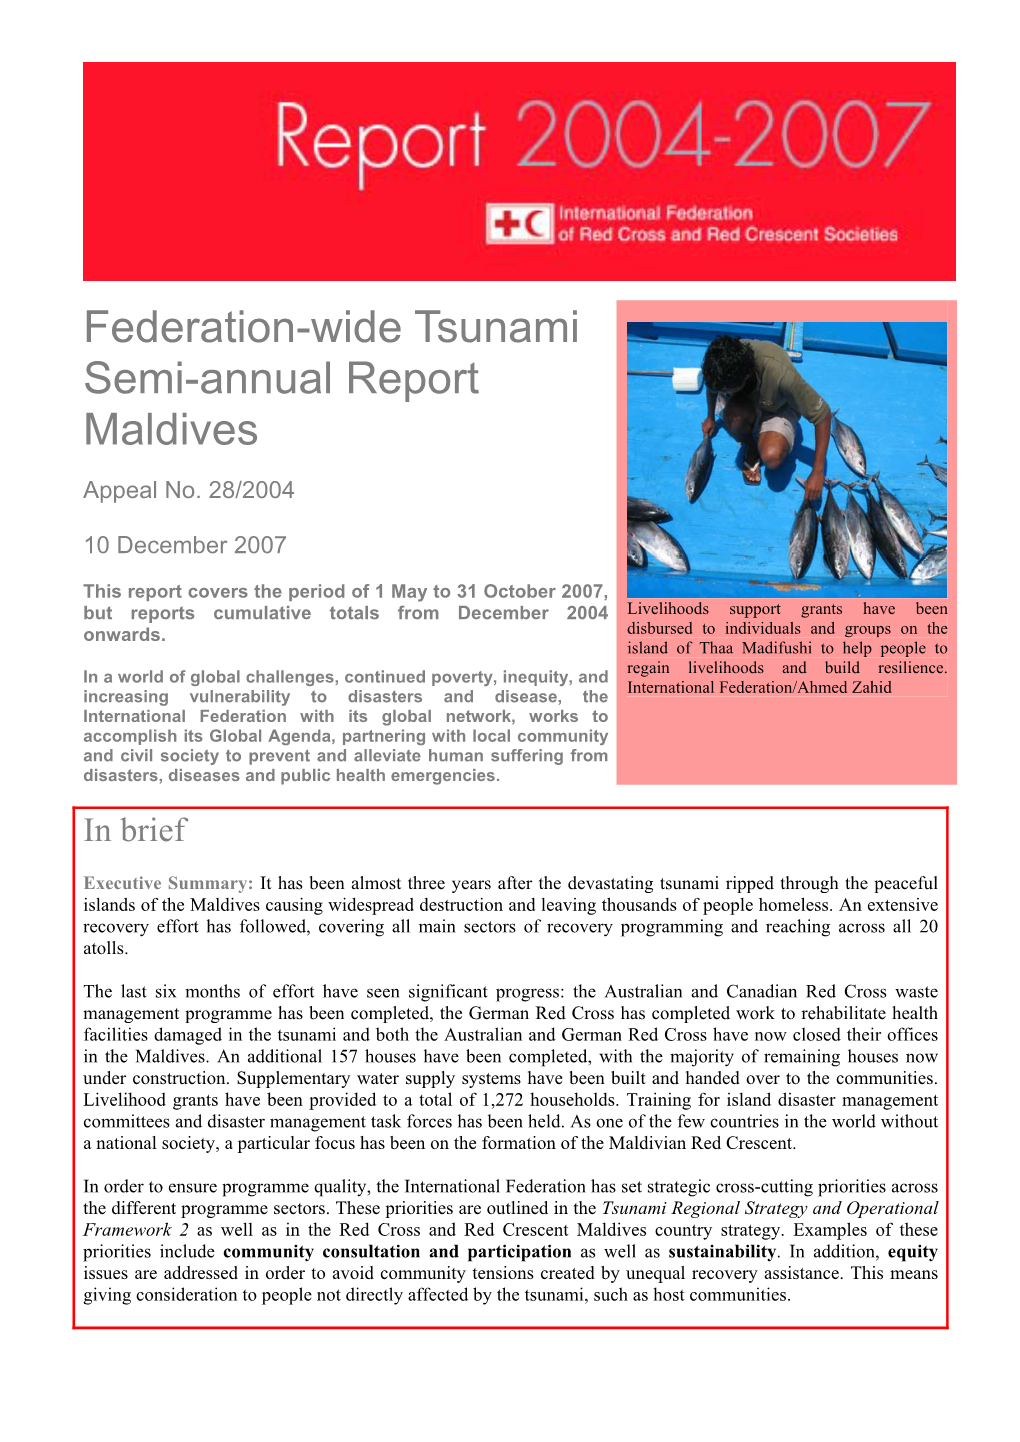 Federation-Wide Semi-Annual Report